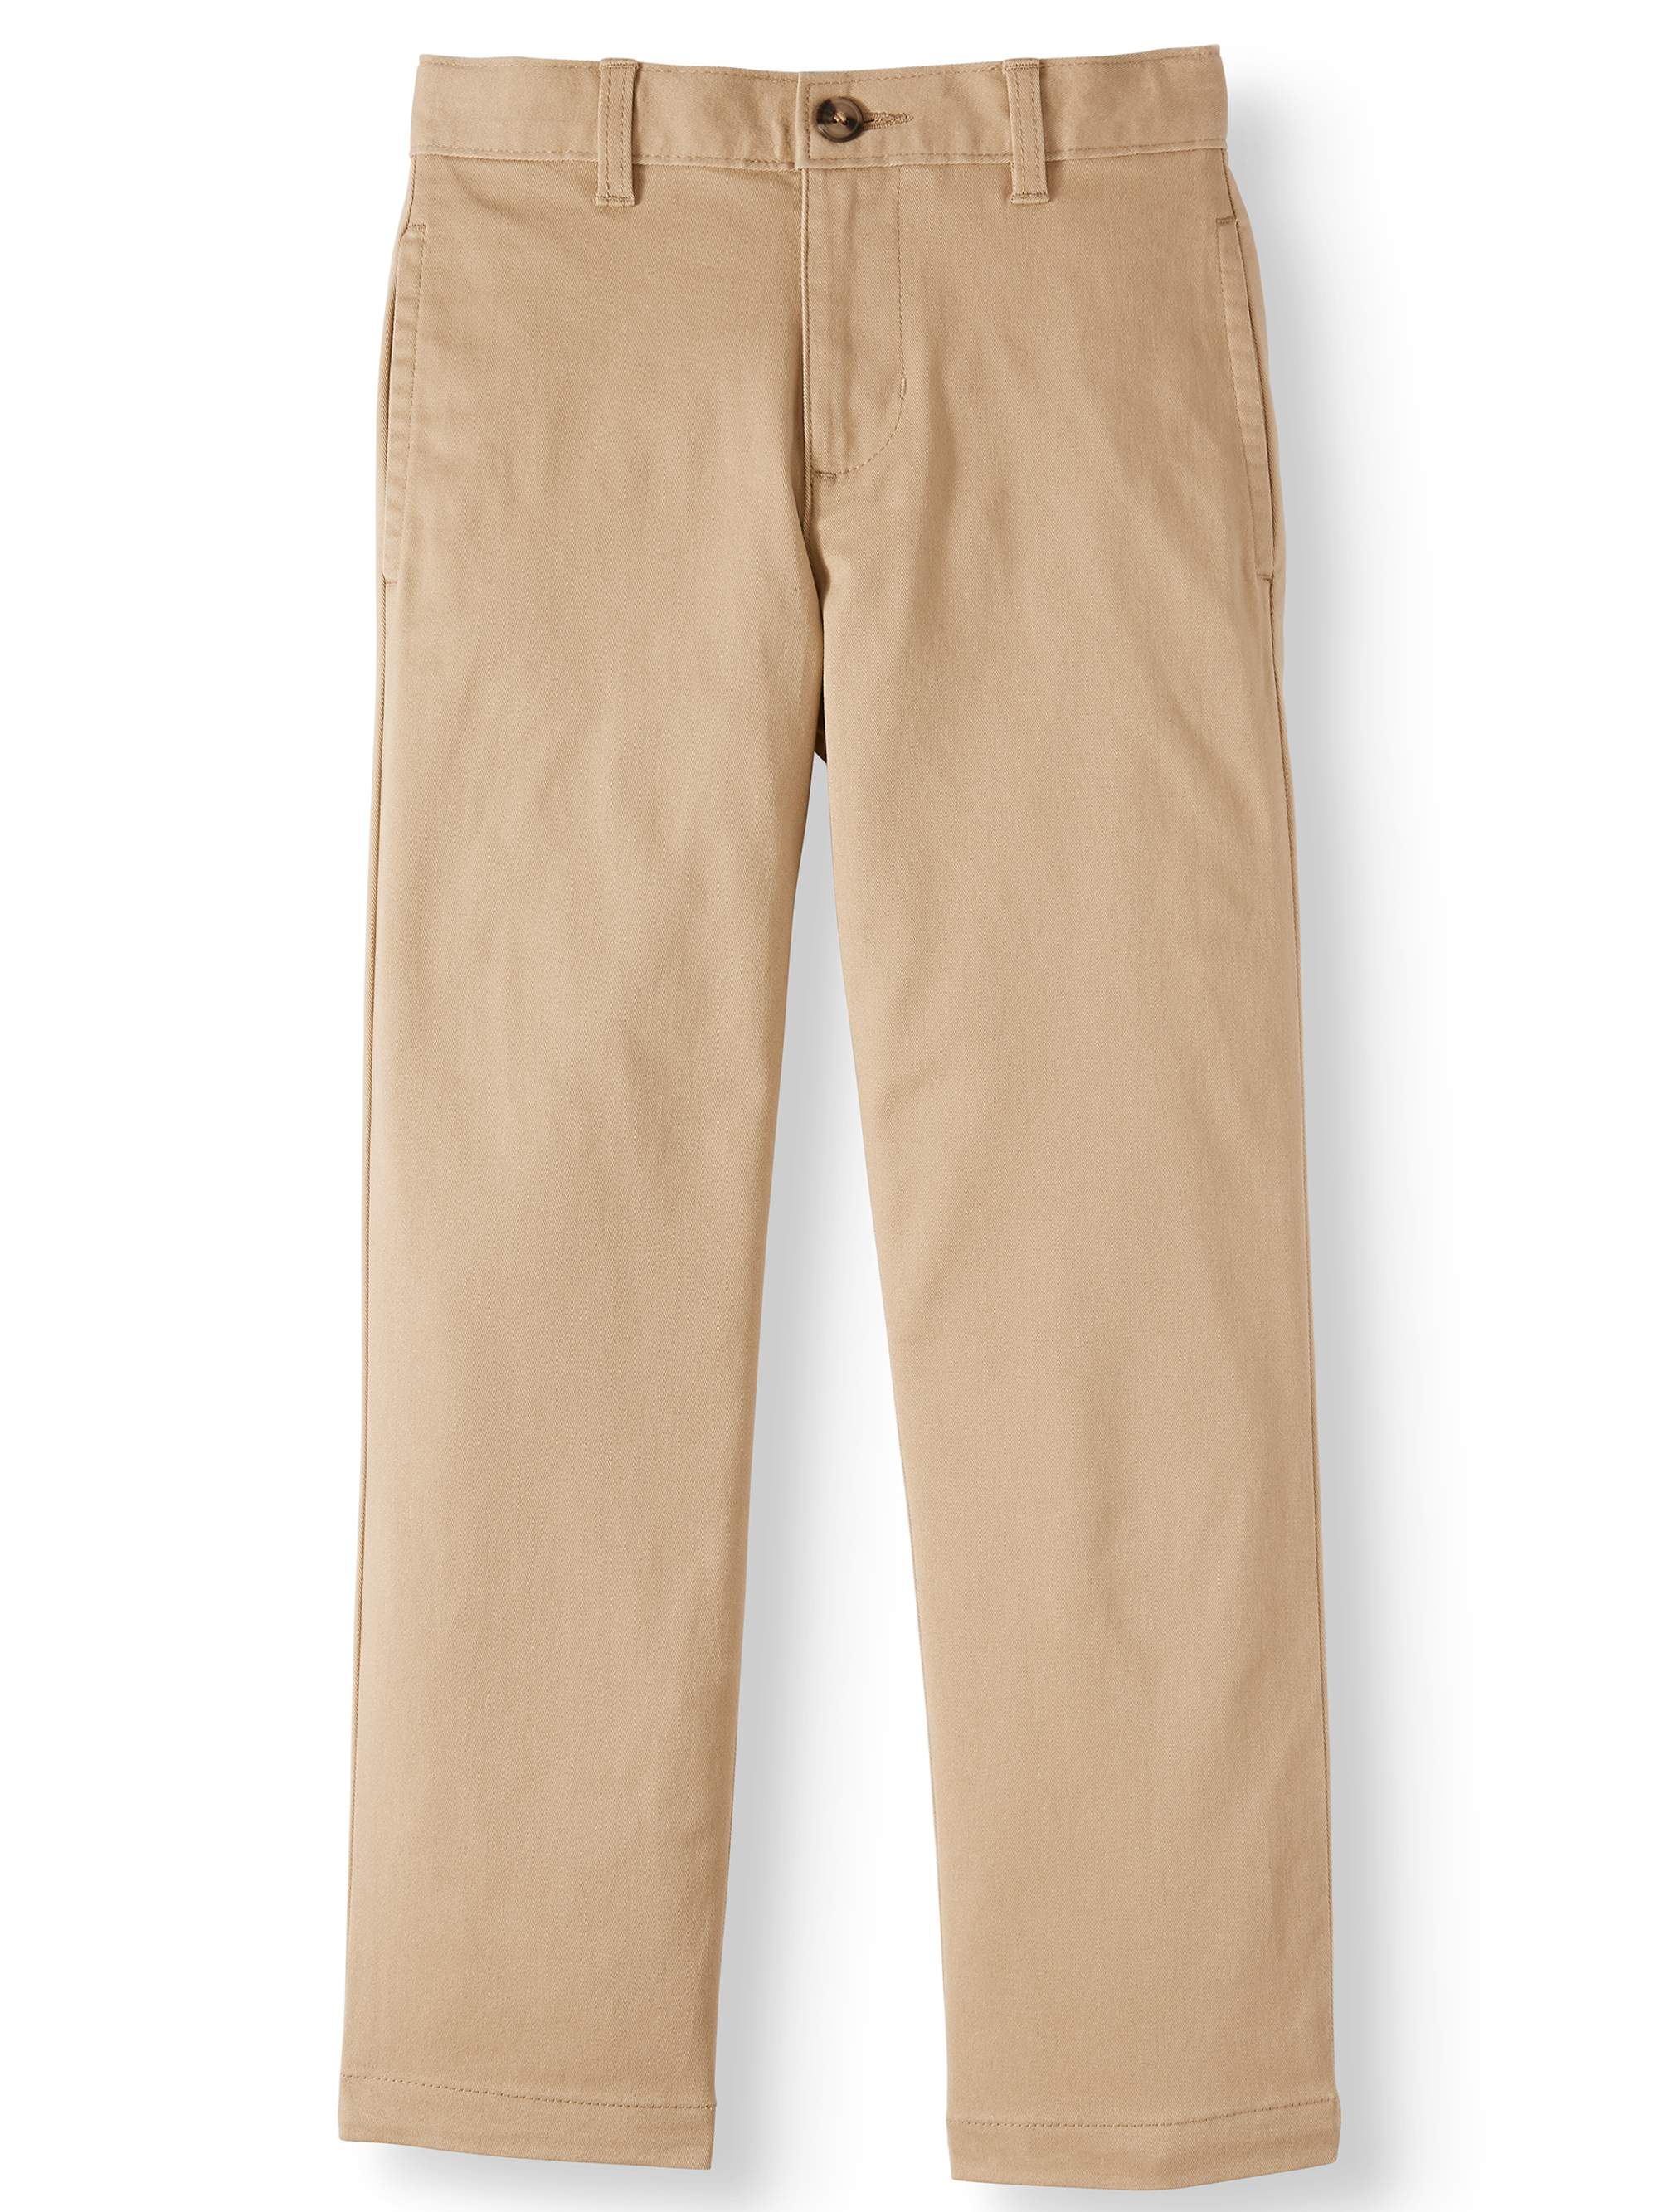 Wonder Nation Boys' School Uniform Stretch Chino Pants, Sizes 4-18, Slim & Husky - image 1 of 5